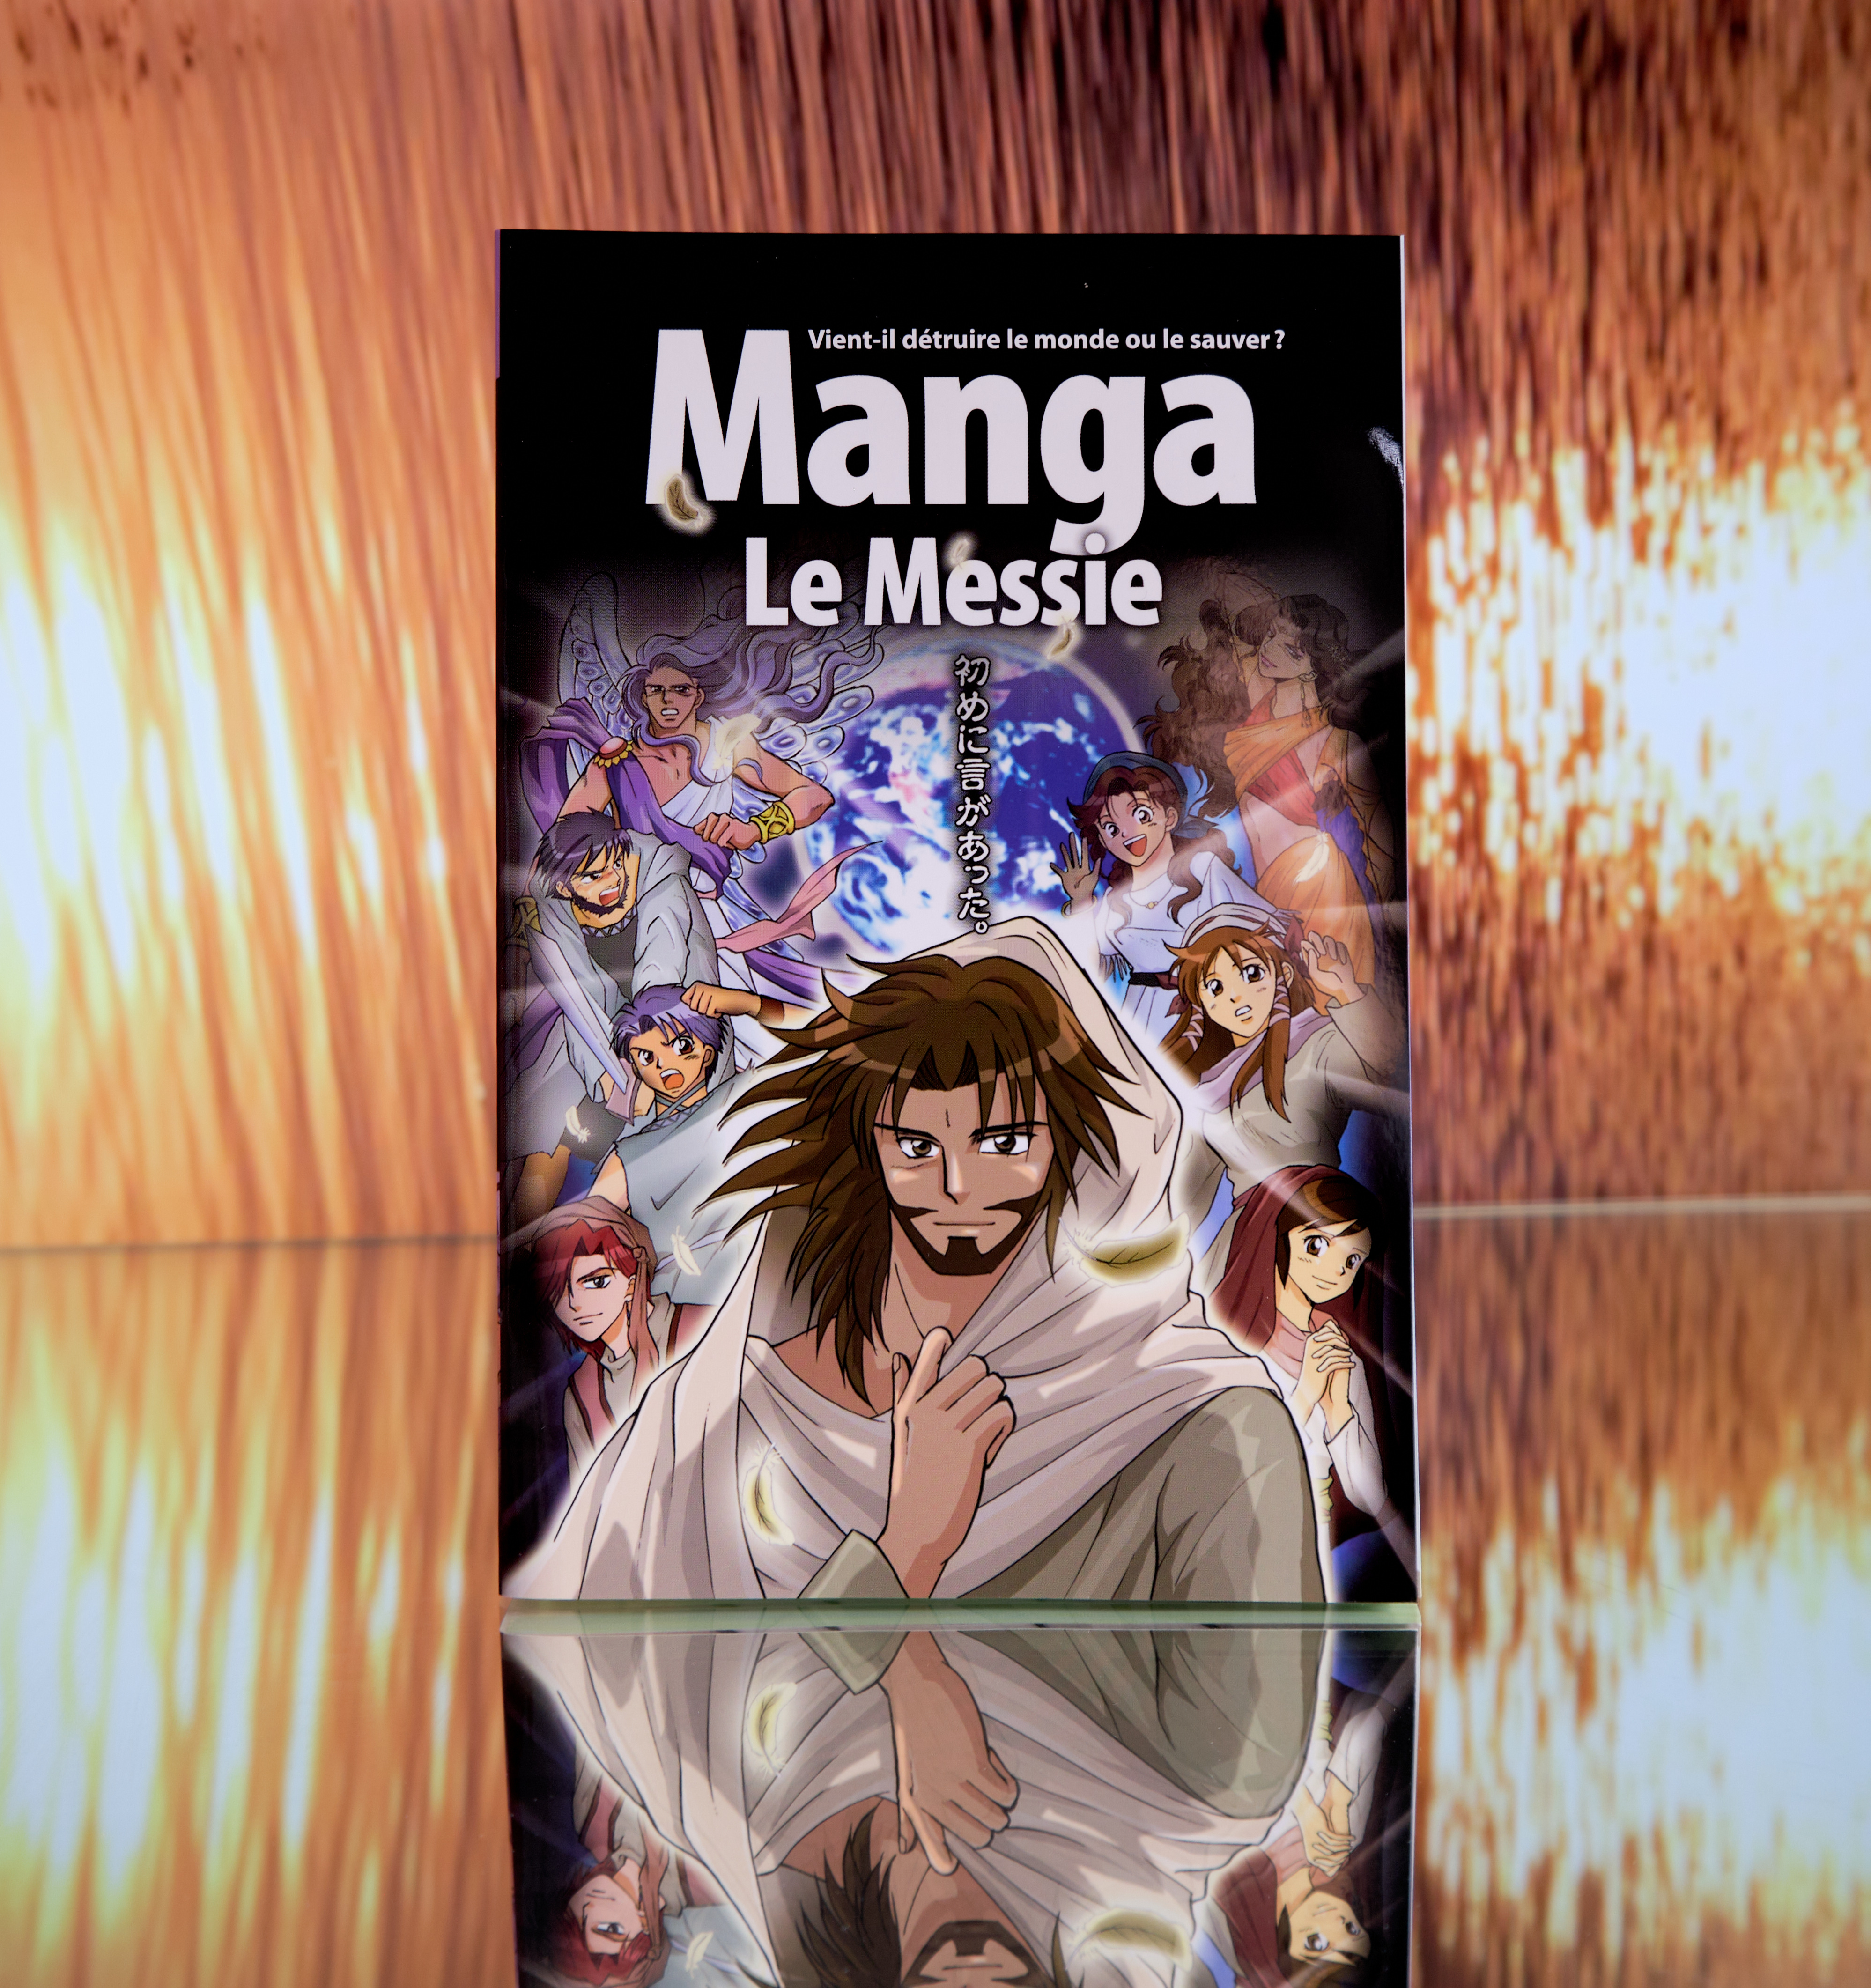 Manga Le Messie - Vol. 4 - Vient-il détruire le monde ou le sauver ?